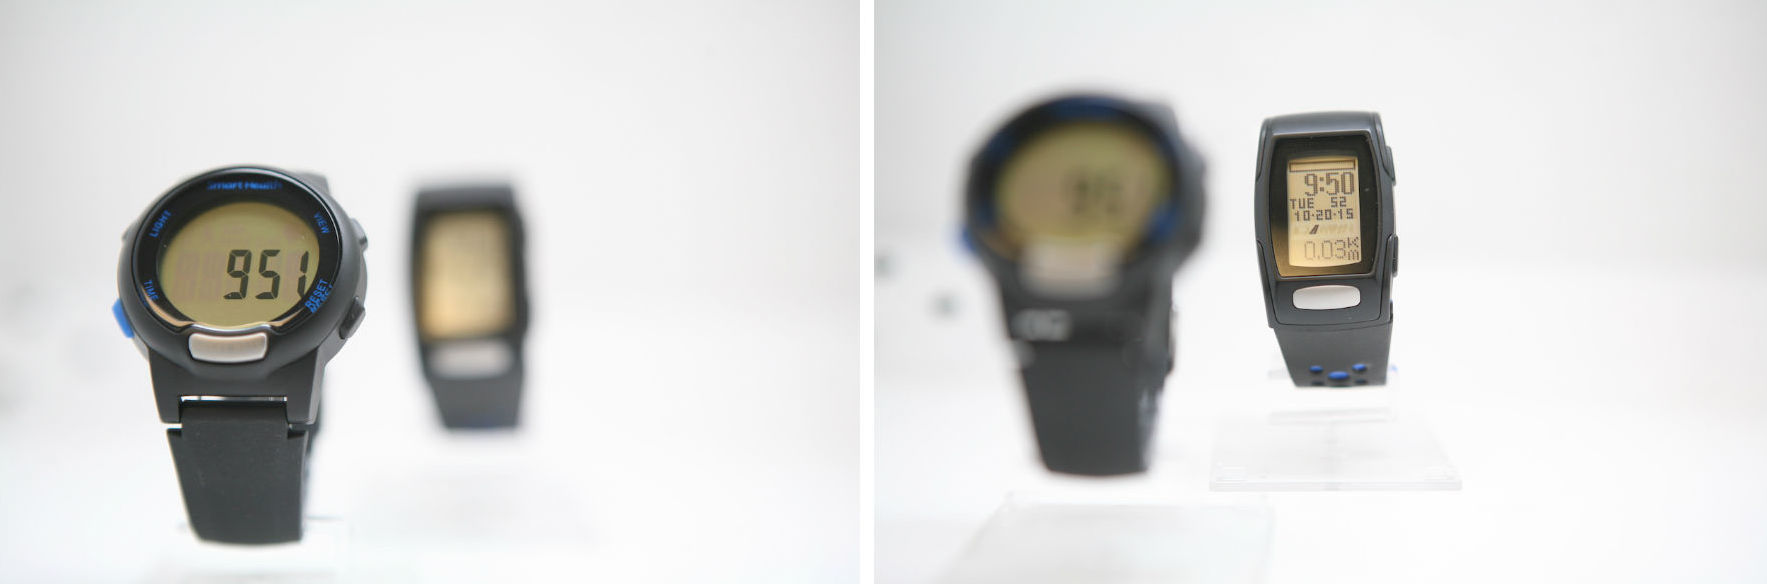 Проще некуда. Самые дешевые часы с пульсометром «для богатых»: Smart Health - 10